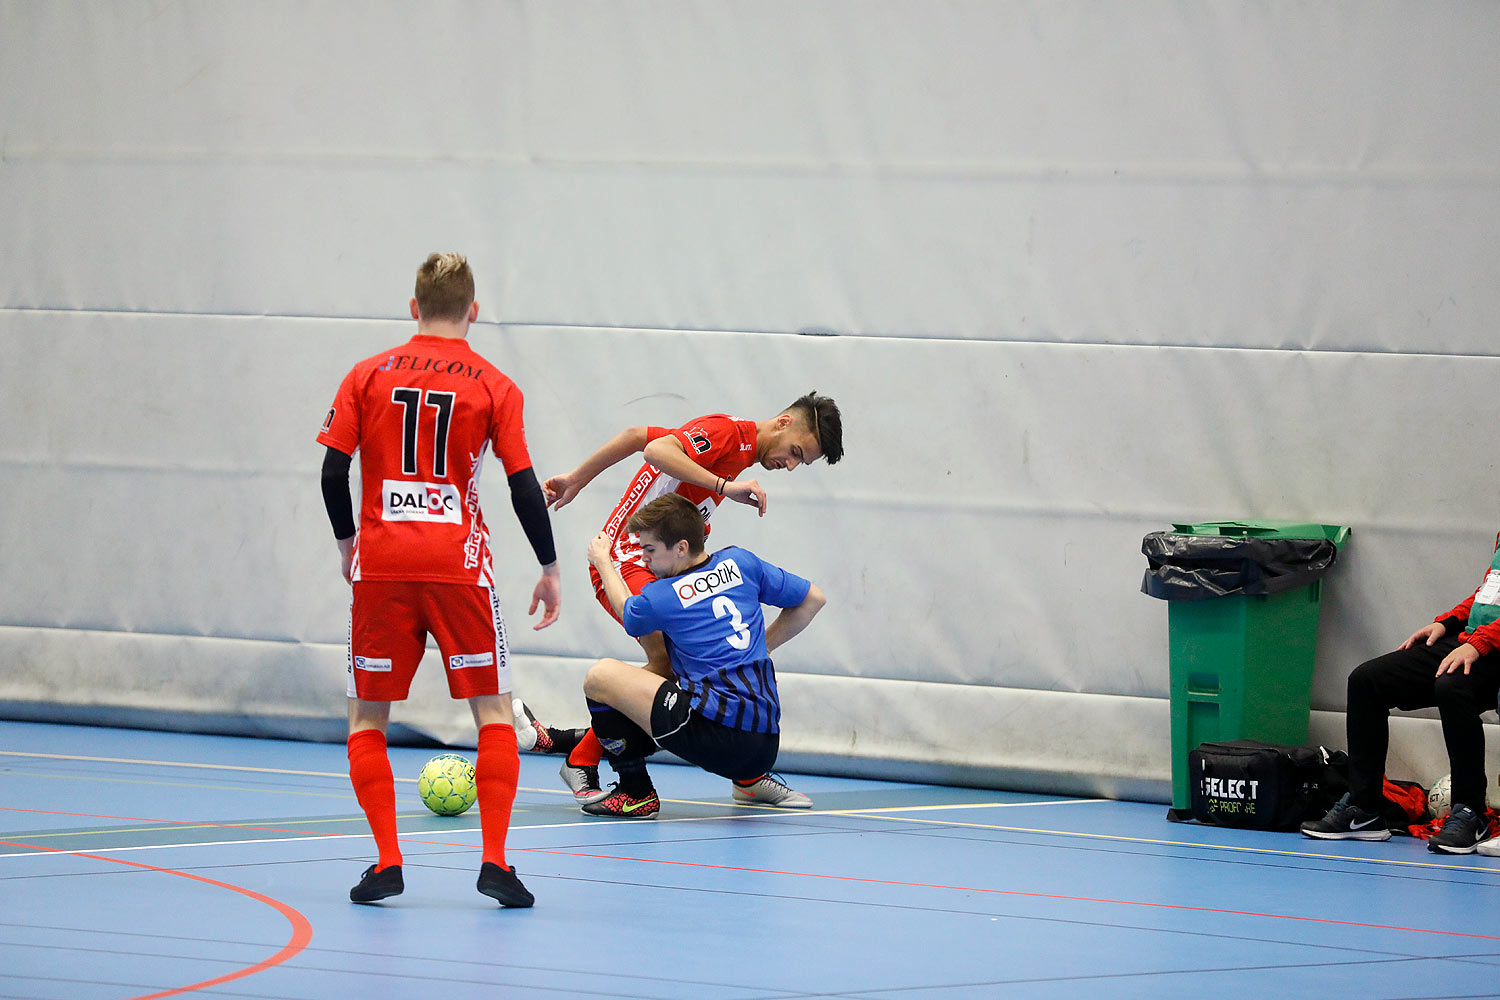 Skövde Futsalcup Herrjuniorer Ulricehamns IFK-Töreboda IK,herr,Arena Skövde,Skövde,Sverige,Skövde Futsalcup 2016,Futsal,2016,141945